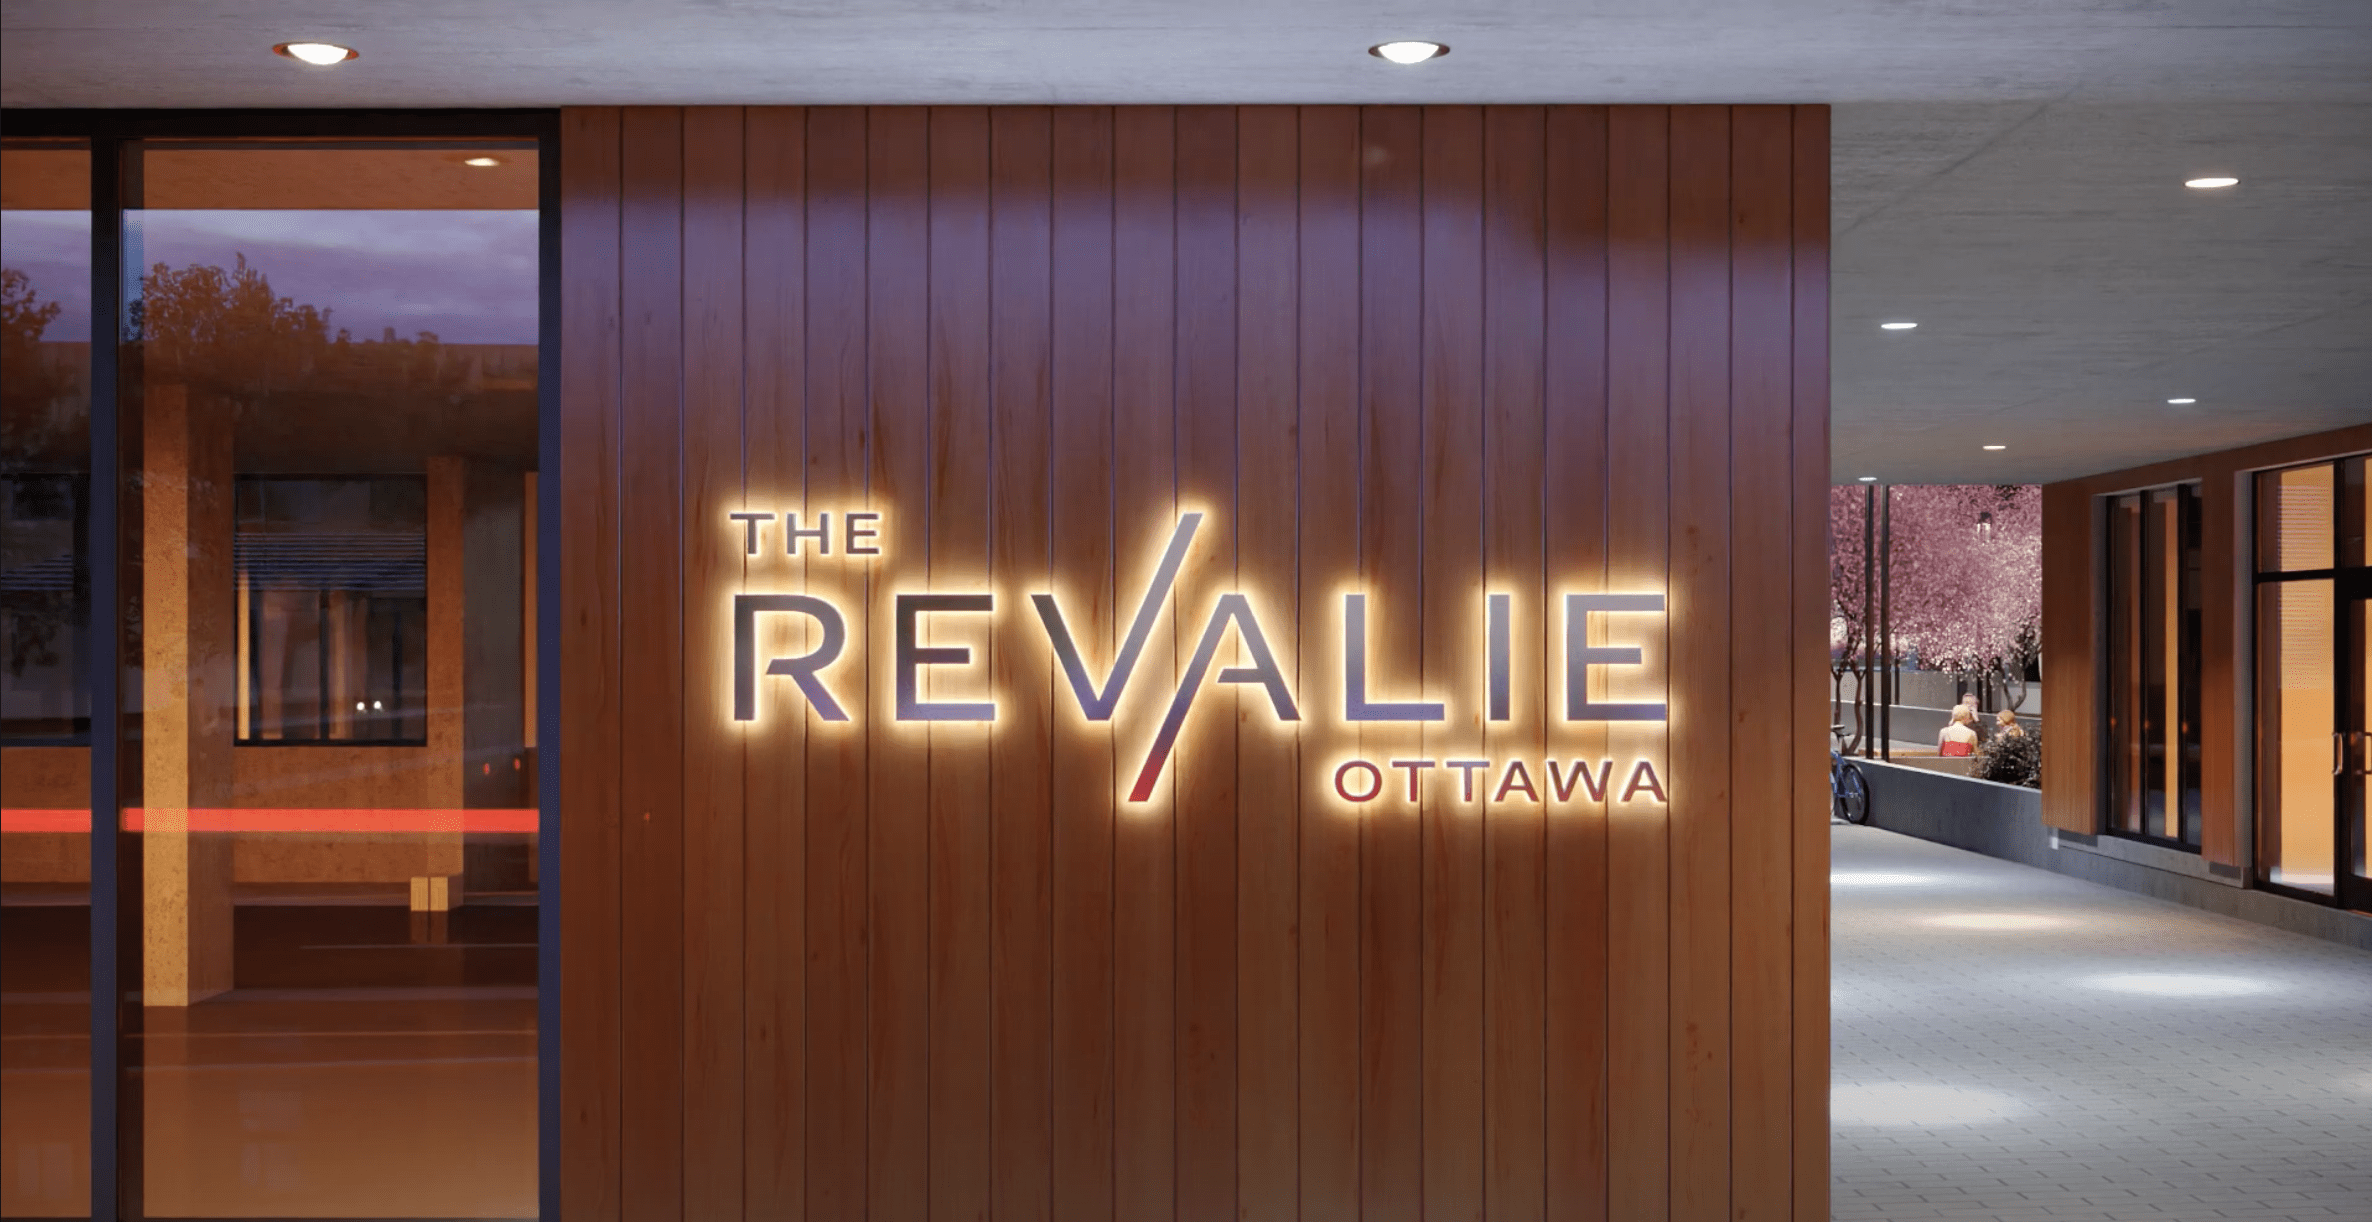 Entrance - Revalie Ottawa signage